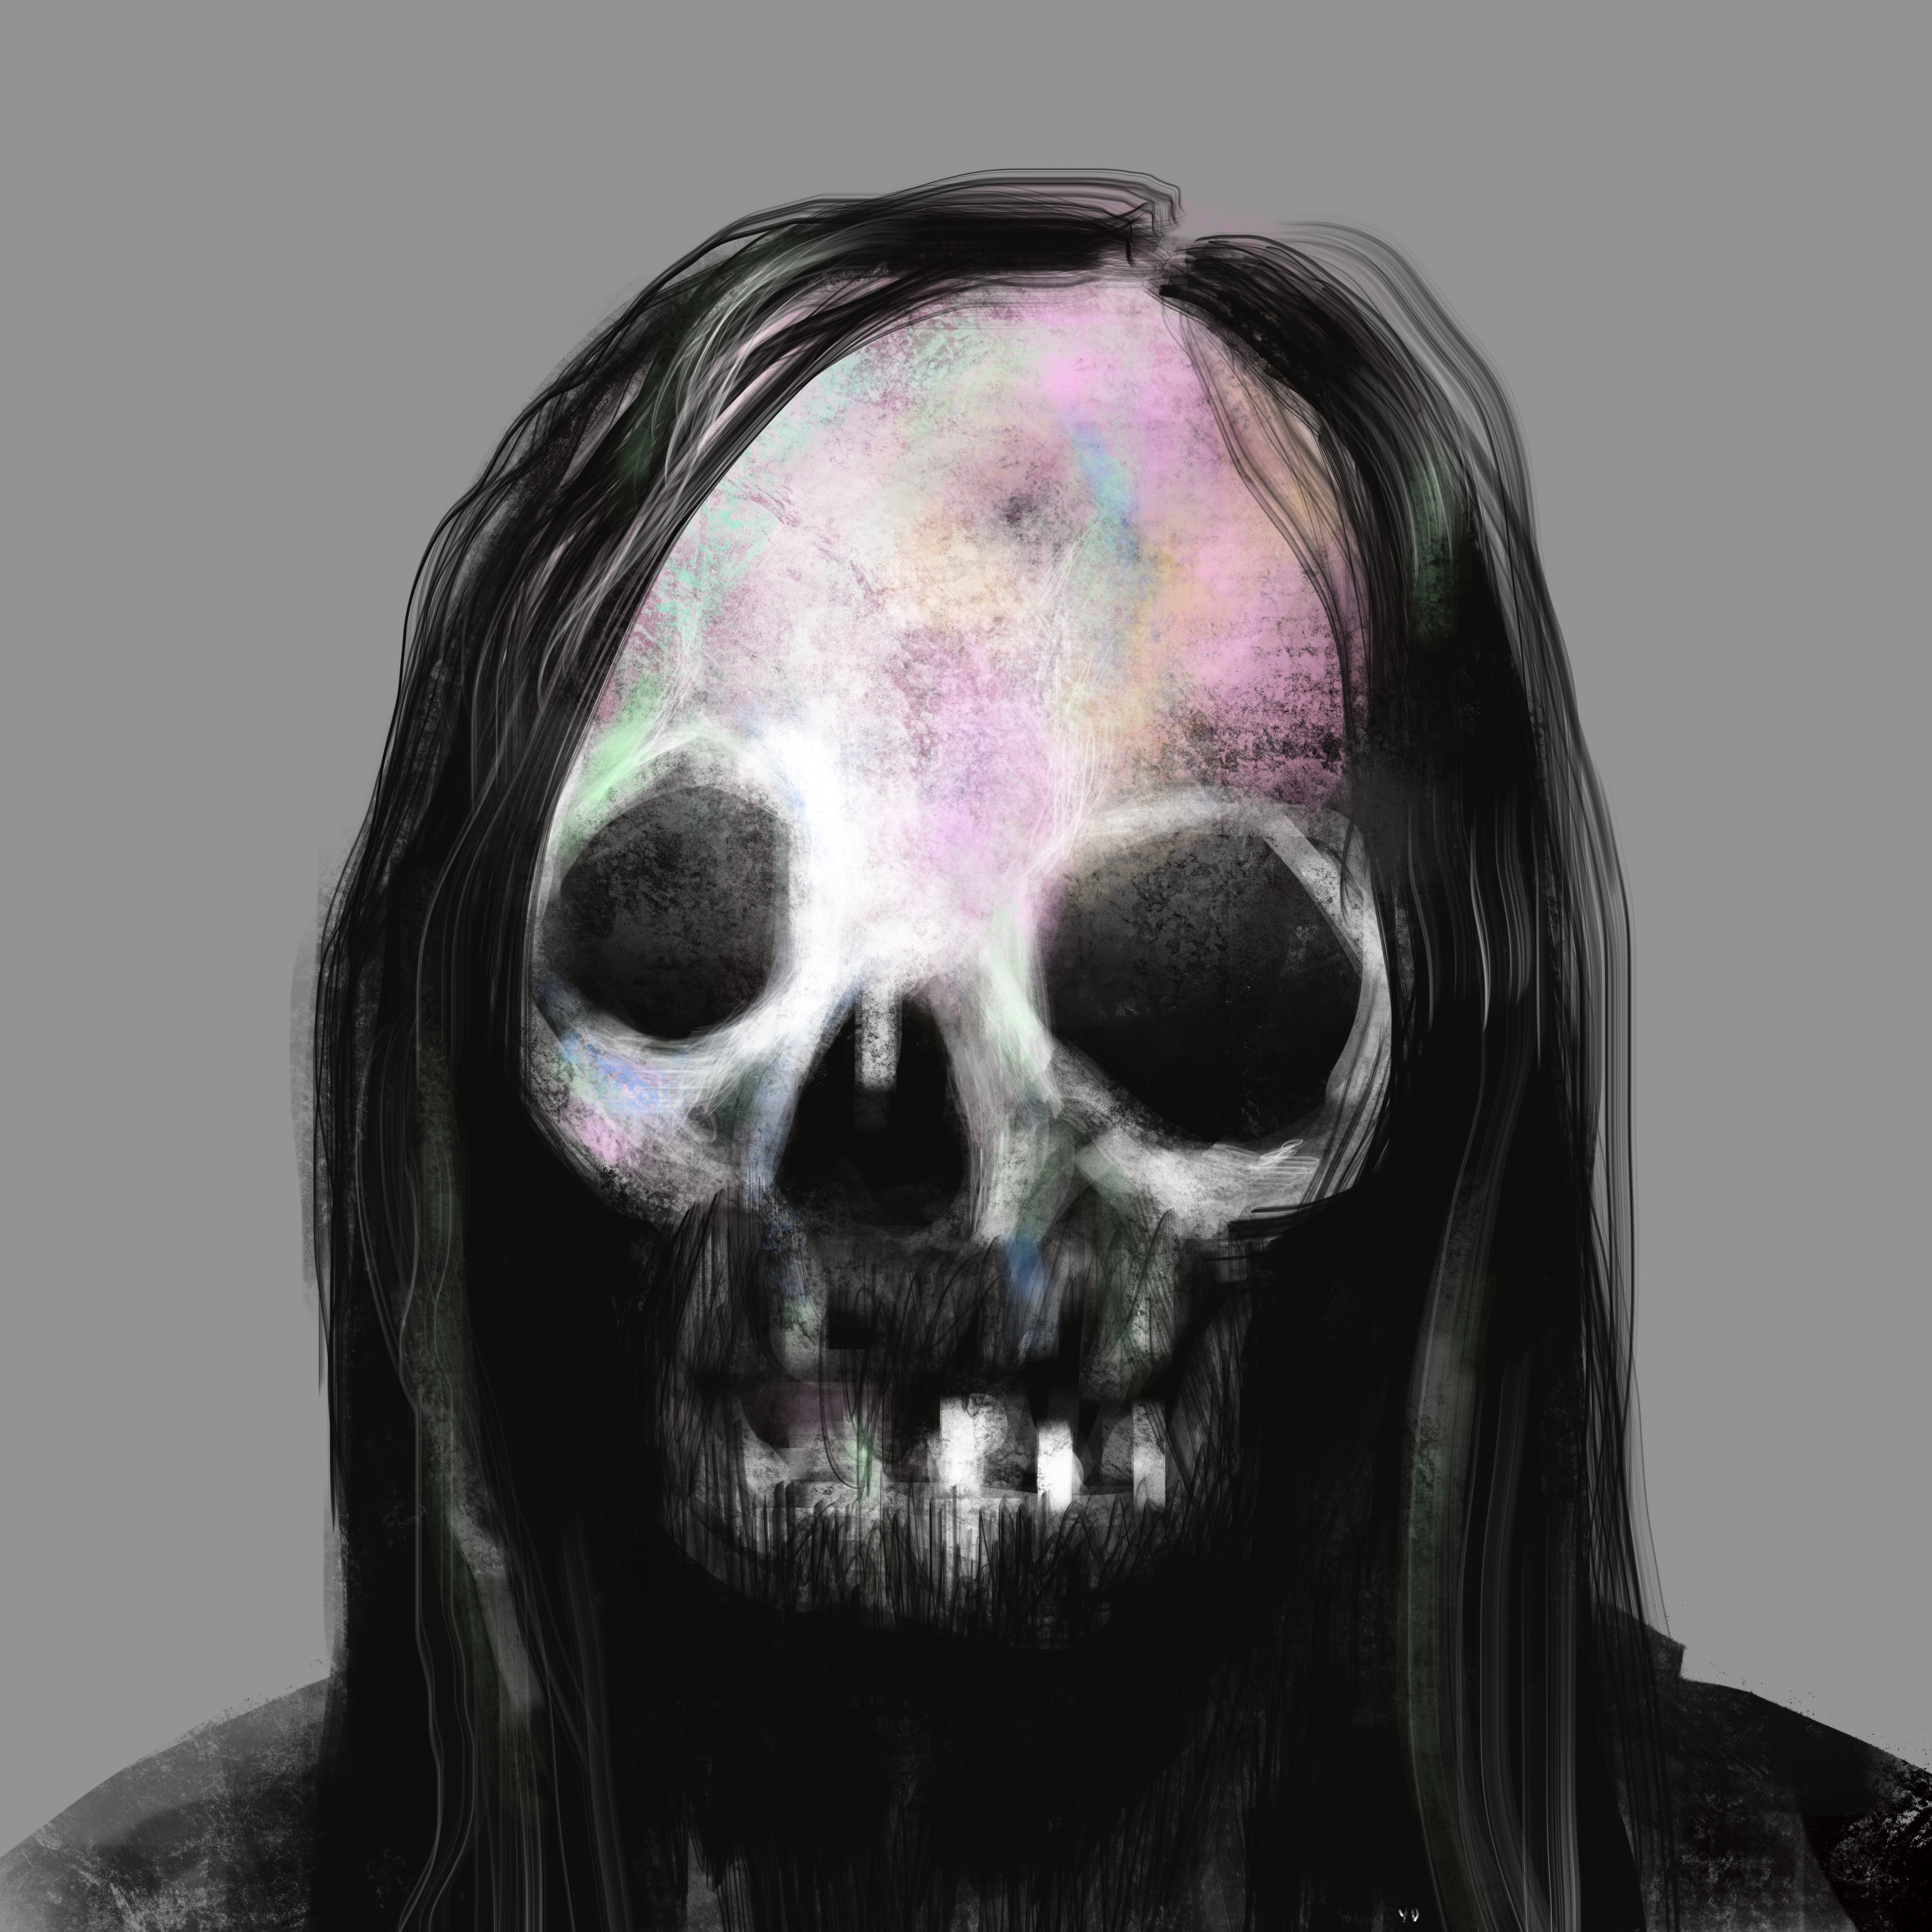 Skull #287 - "Drummer"